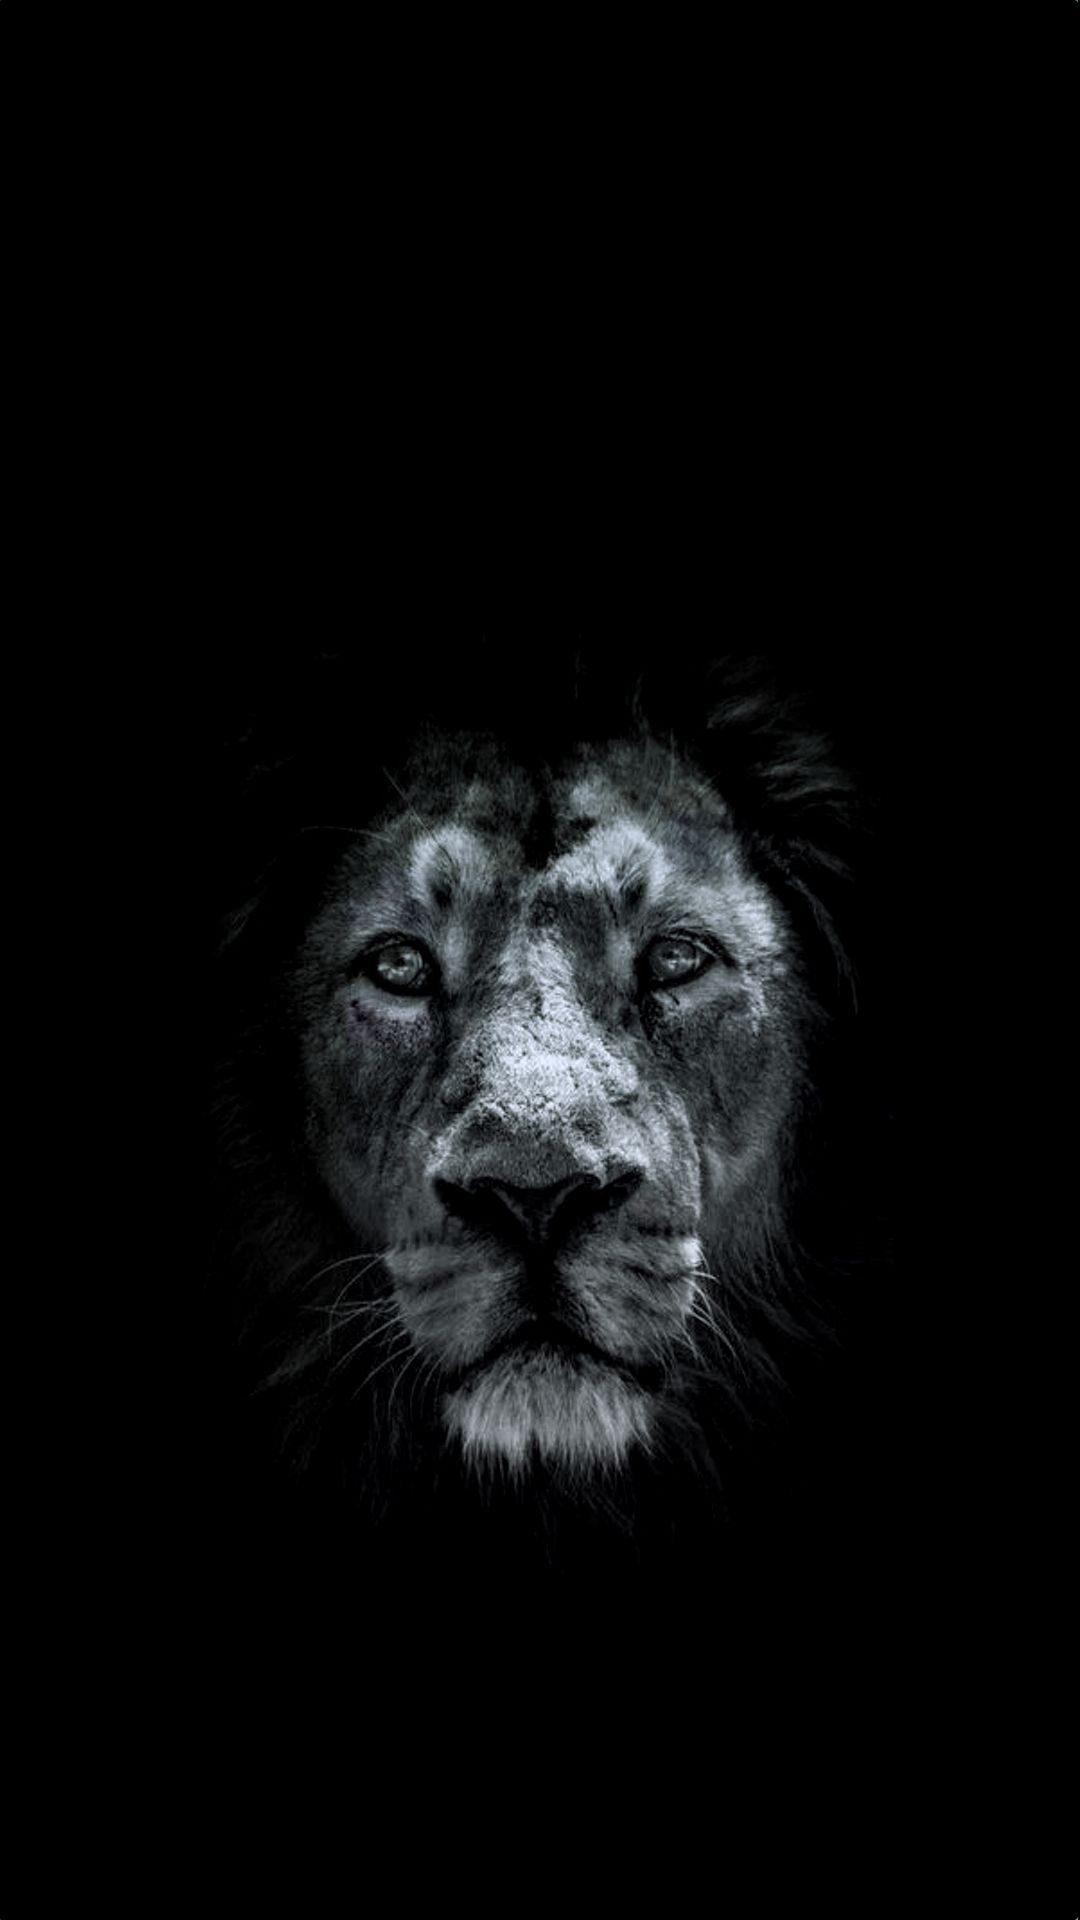 Dark Lion King by PunkerLazar on DeviantArt